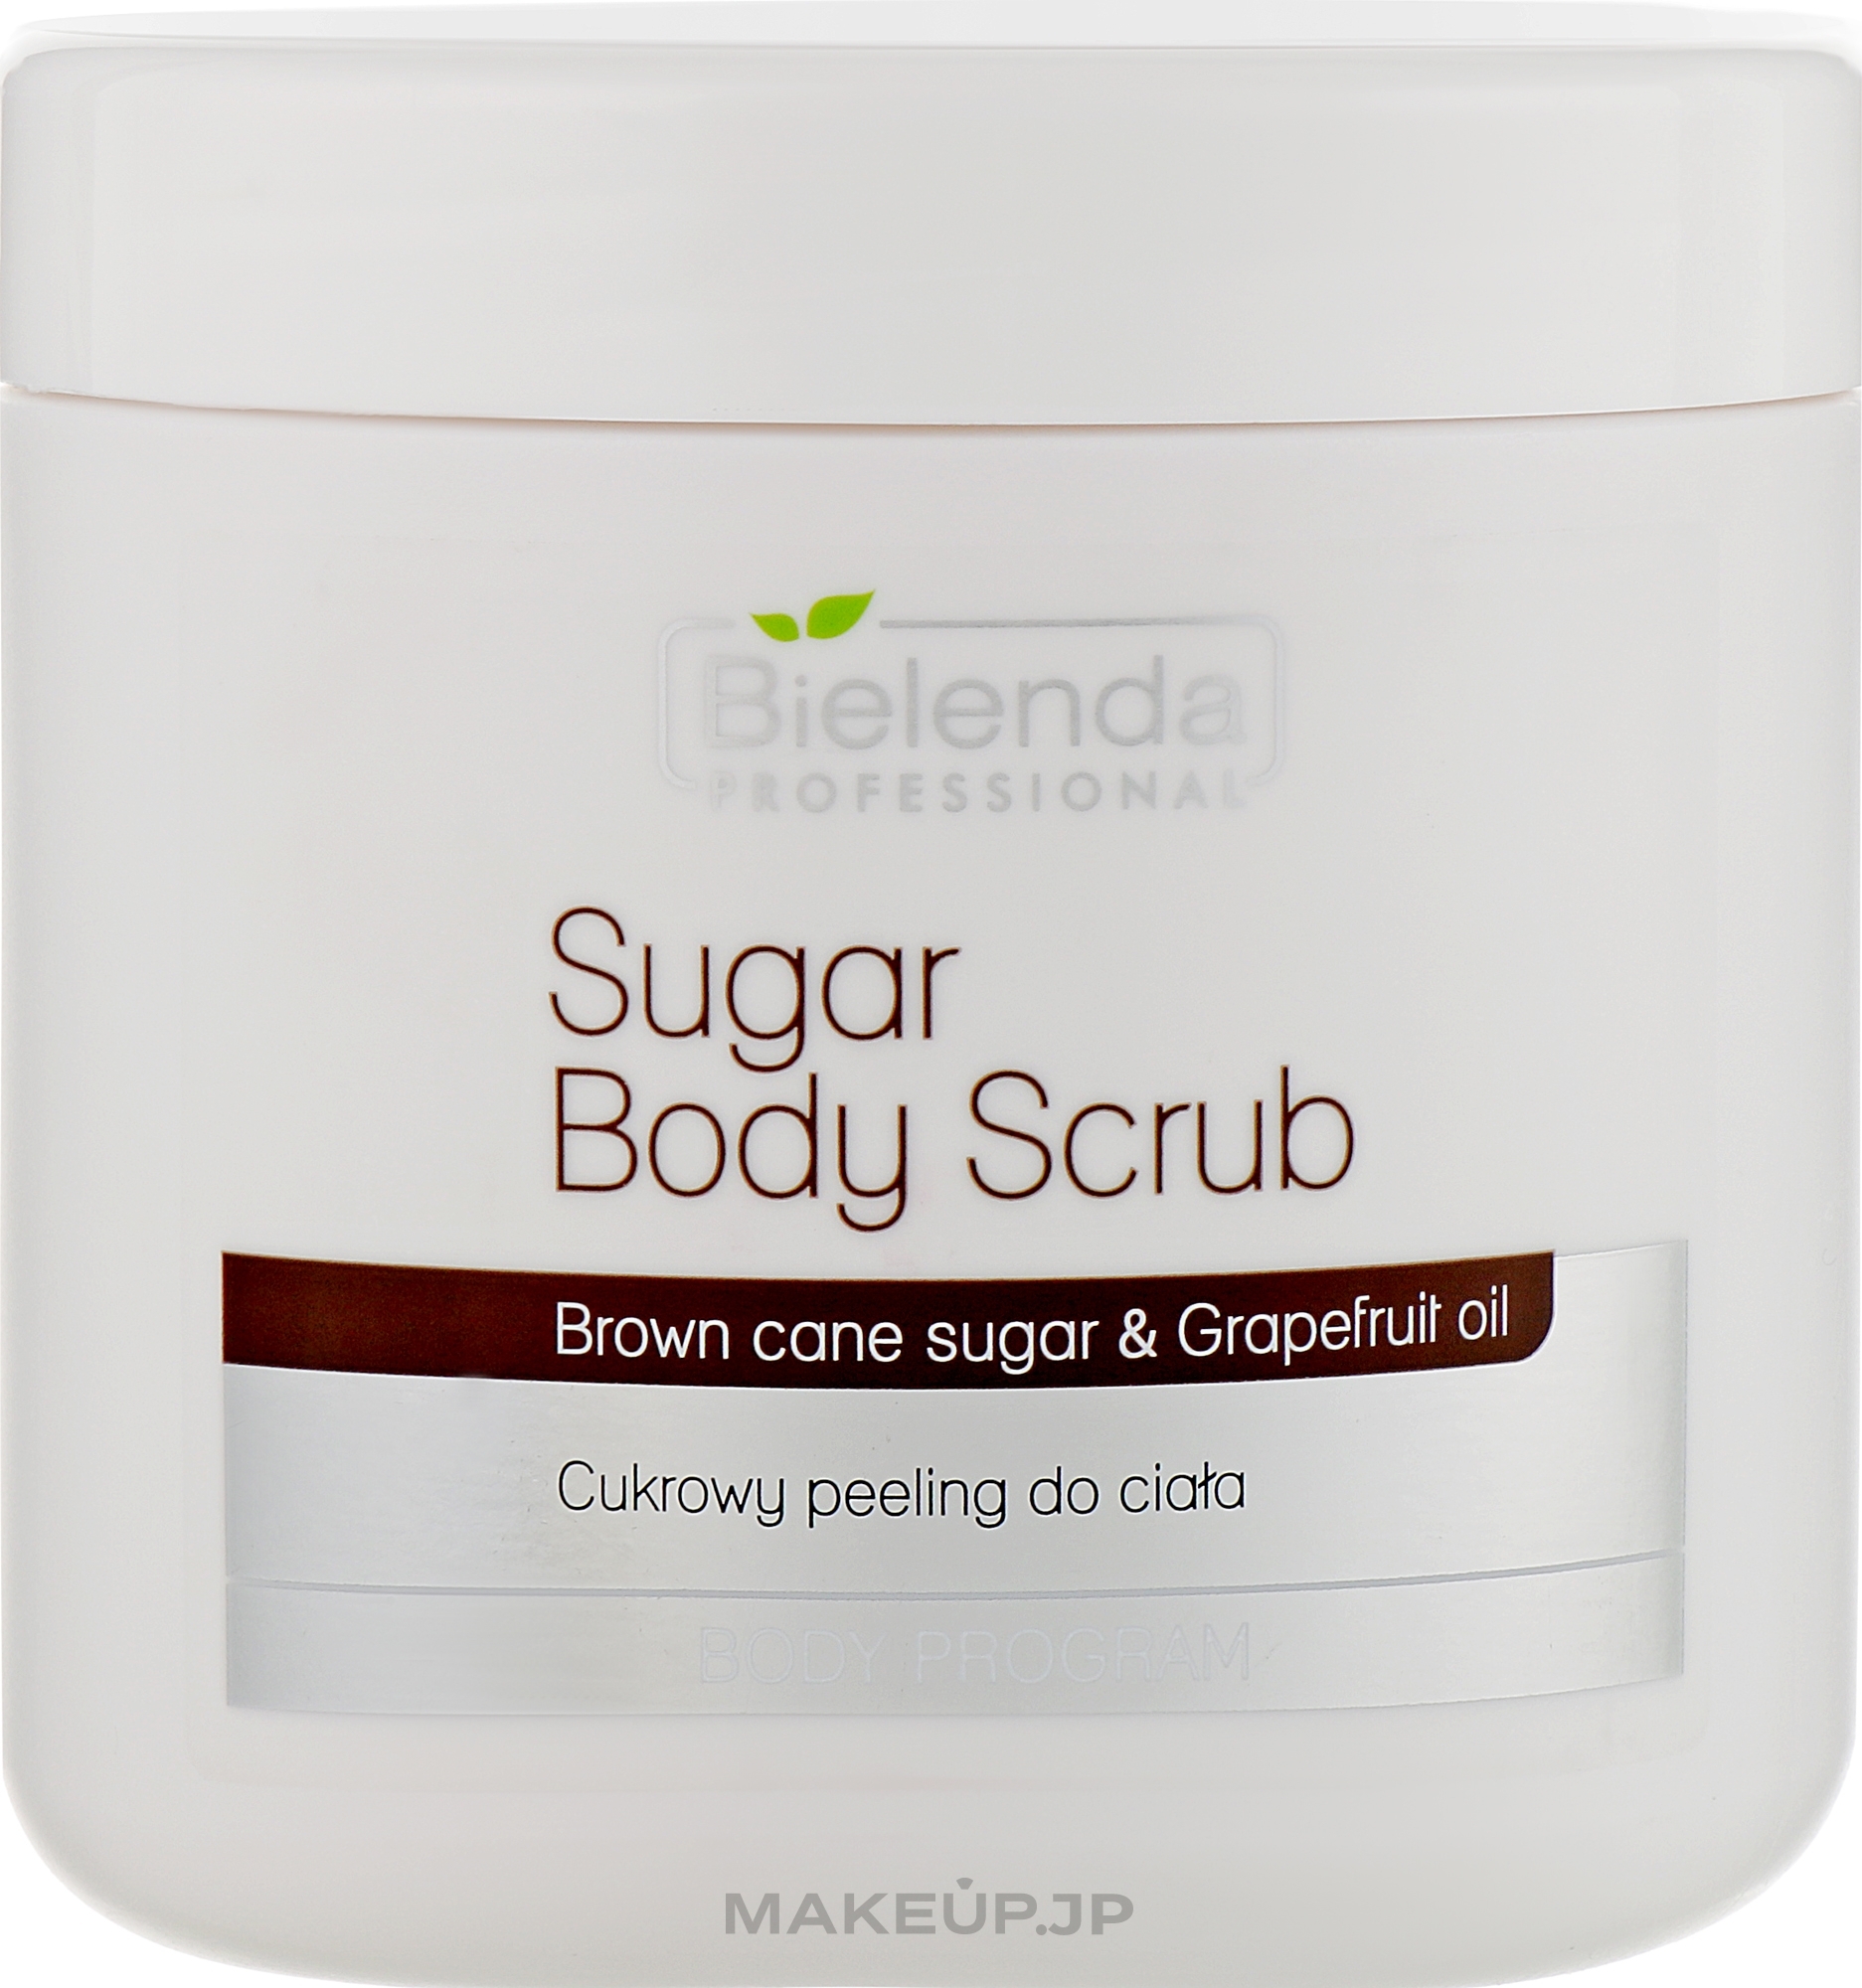 Sugar Body Scrub - Bielenda Professional Body Program Sugar Body Scrub — photo 600 g